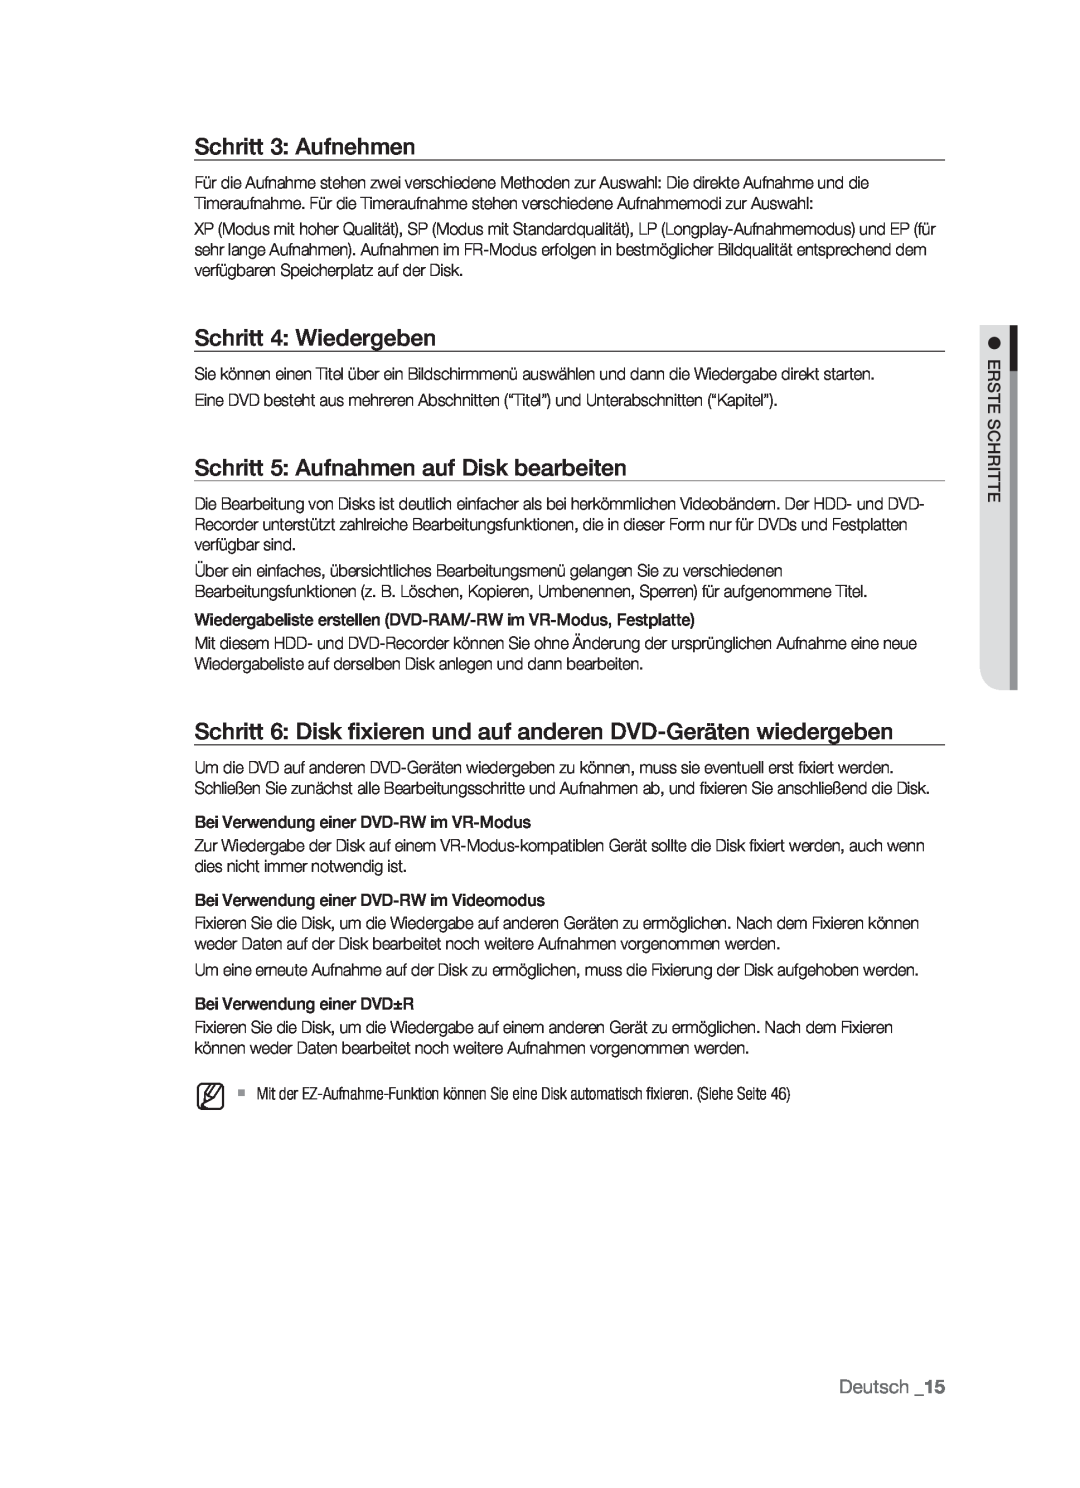 Samsung DVD-HR773/AUS manual Schritt 3 Aufnehmen, Schritt 4 Wiedergeben, Schritt 5 Aufnahmen auf Disk bearbeiten, Deutsch 